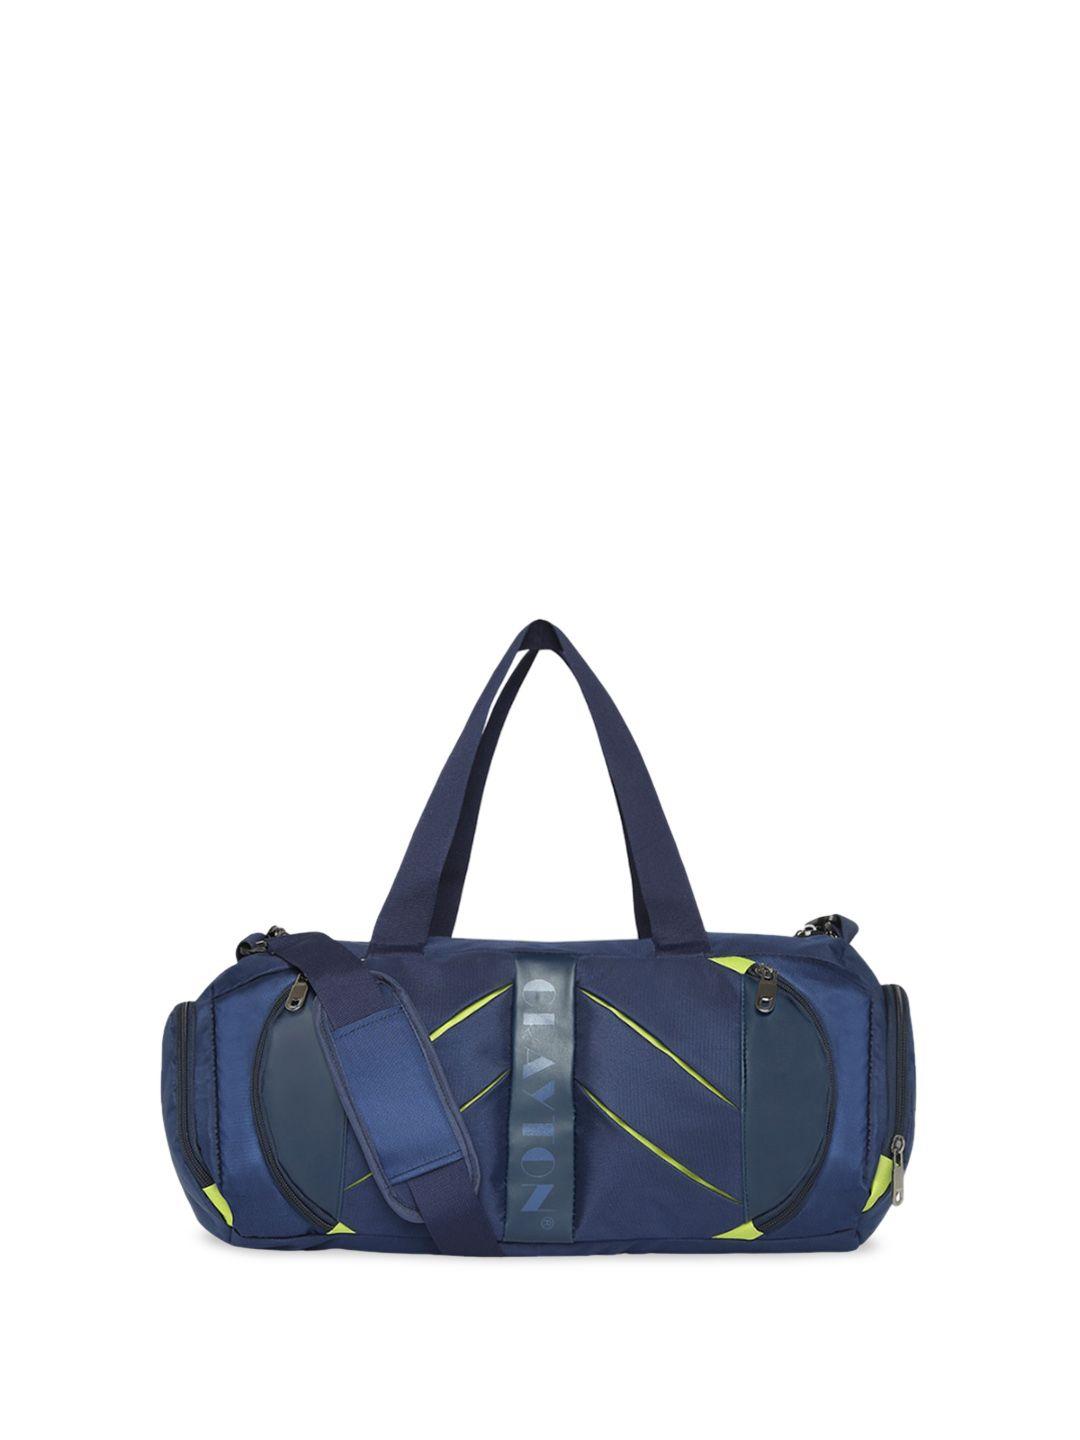 crayton medium sports or gym duffel bag